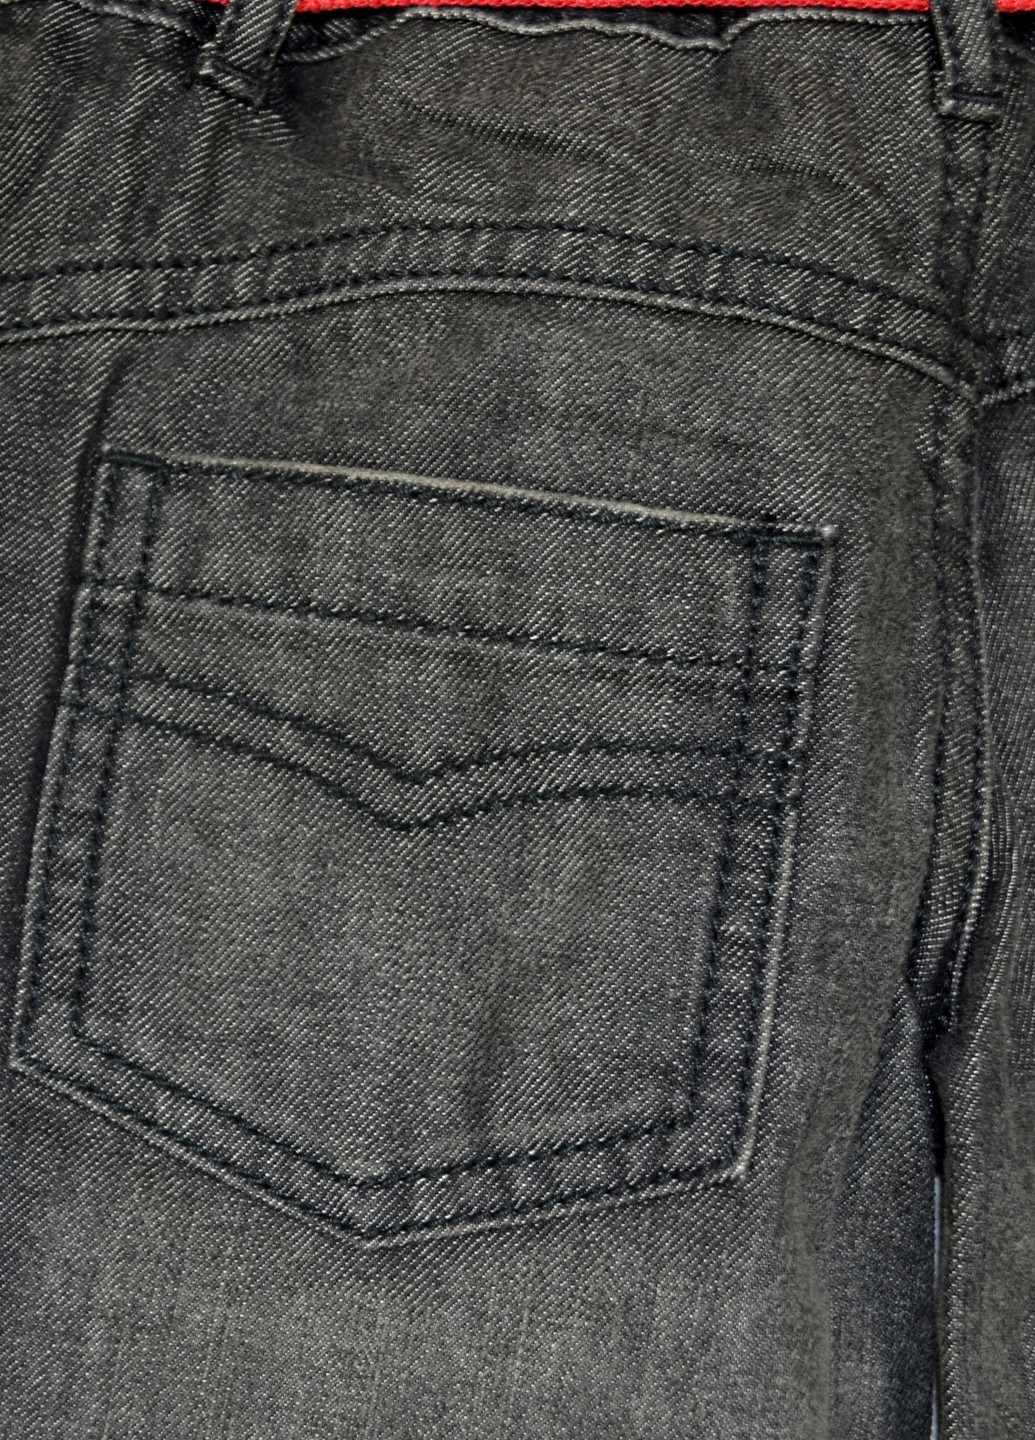 Серые джинсовые демисезонные прямые брюки M&S